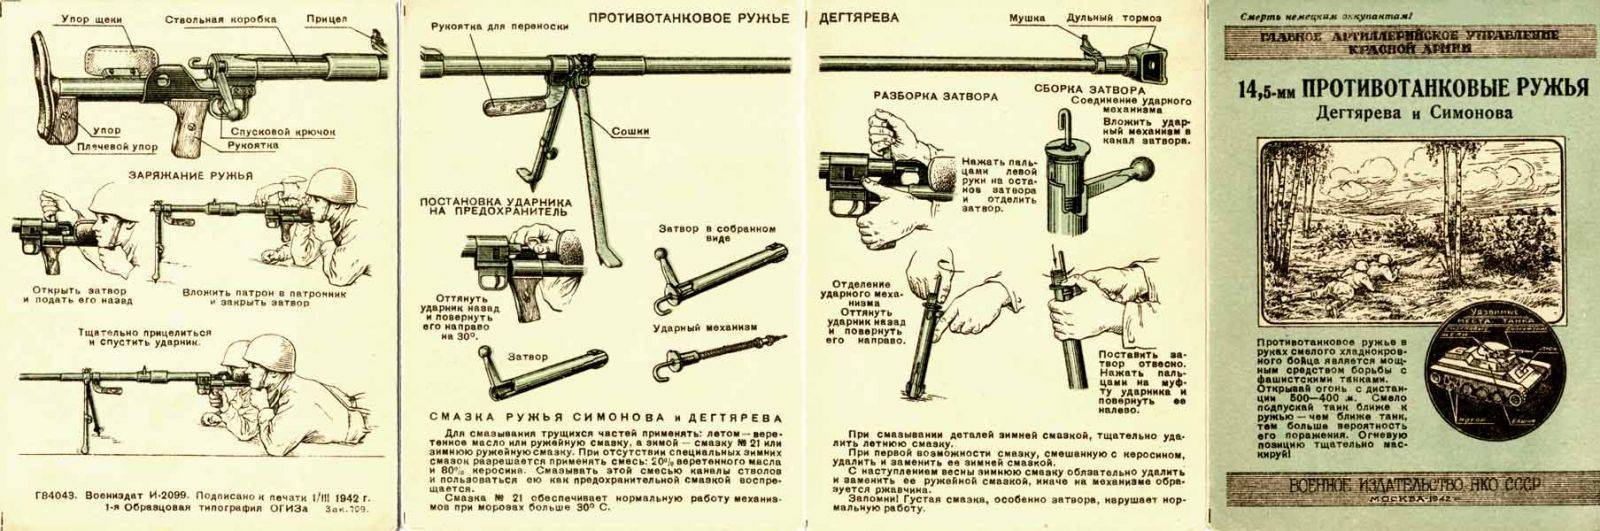 Противотанковое ружье птрc-41